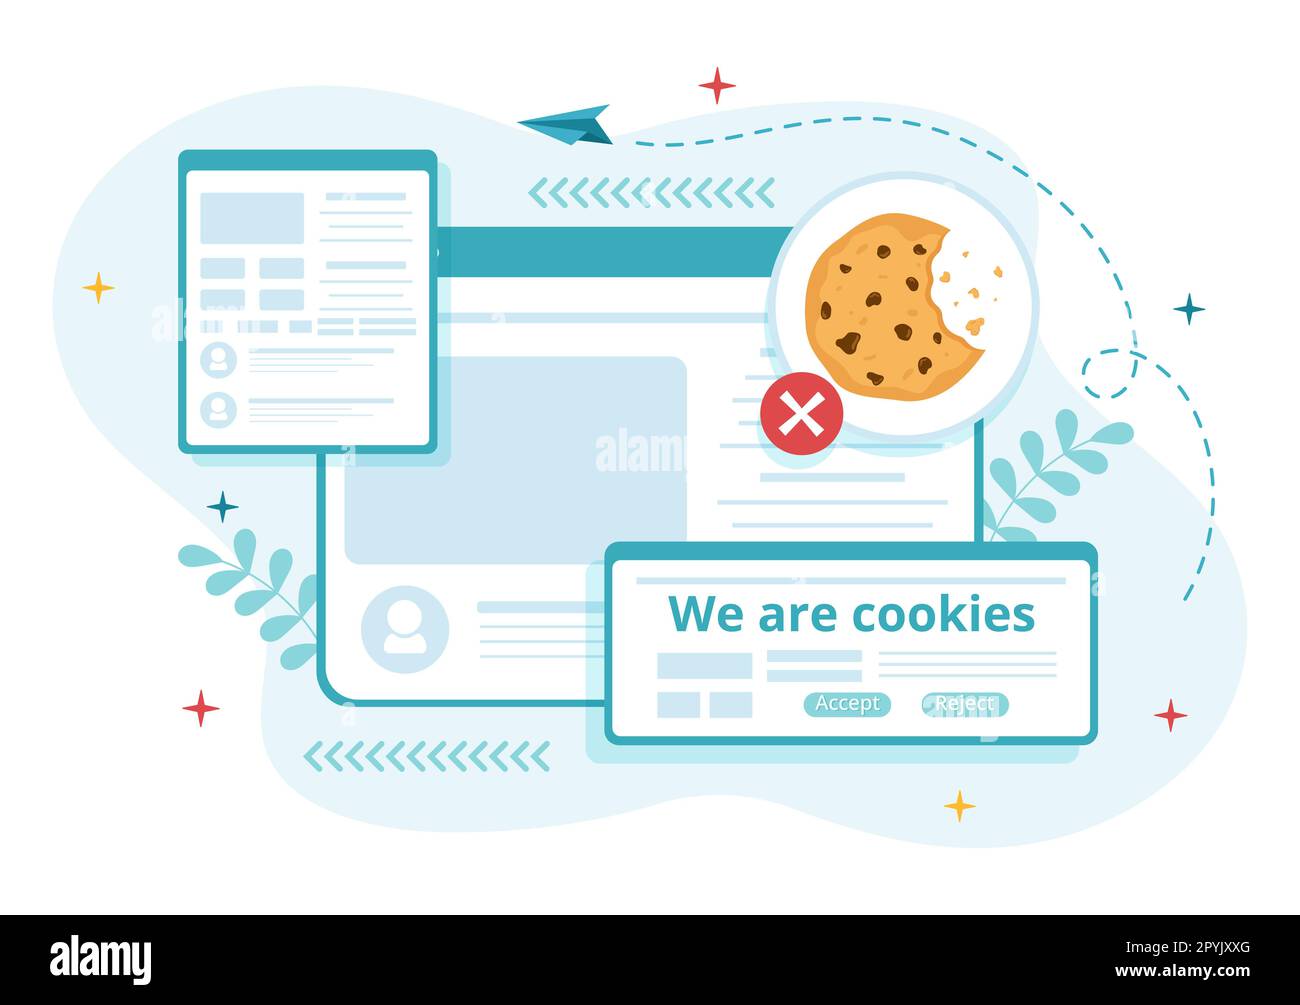 Internet cookies technologie Illustration avec Track cookie enregistrement de la navigation d'un site Web dans un dessin animé à plat modèles de page d'arrivée dessinés à la main Banque D'Images